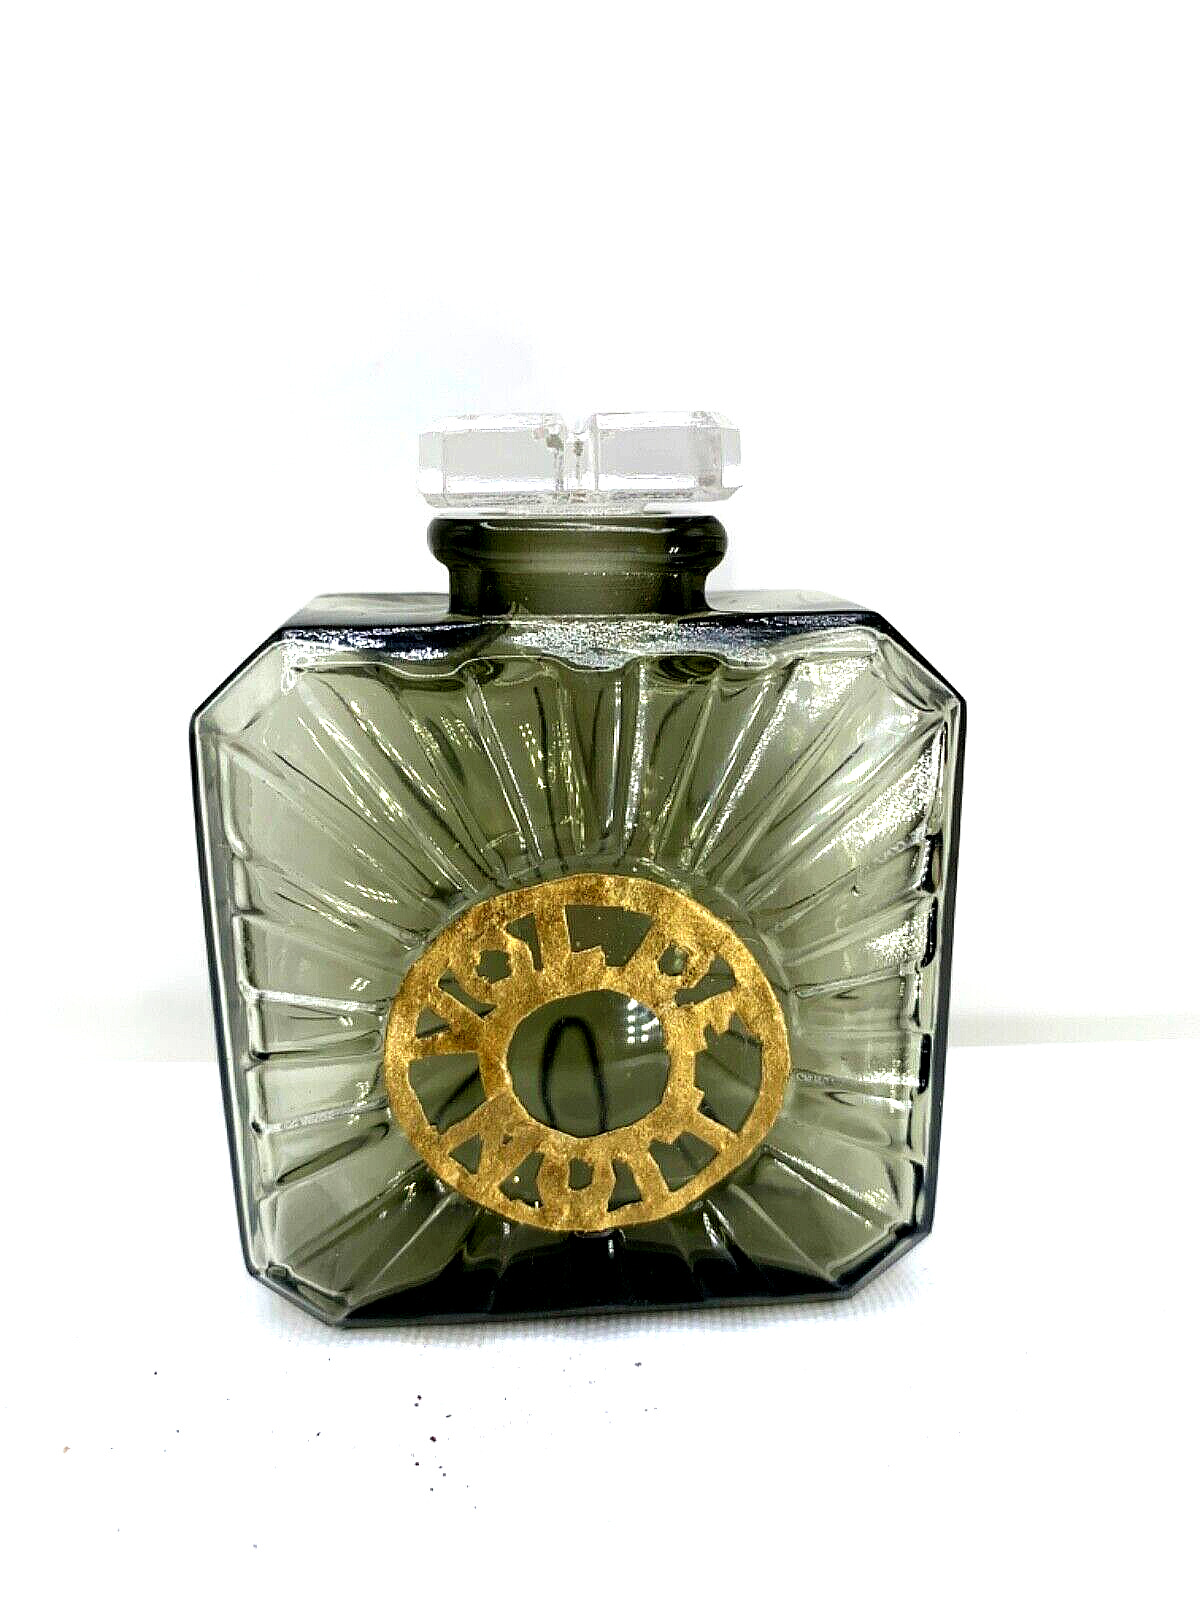 Original Baccarat edition  VTG perfume bottle.  Vol de Nuit by Guerlain.  1933.